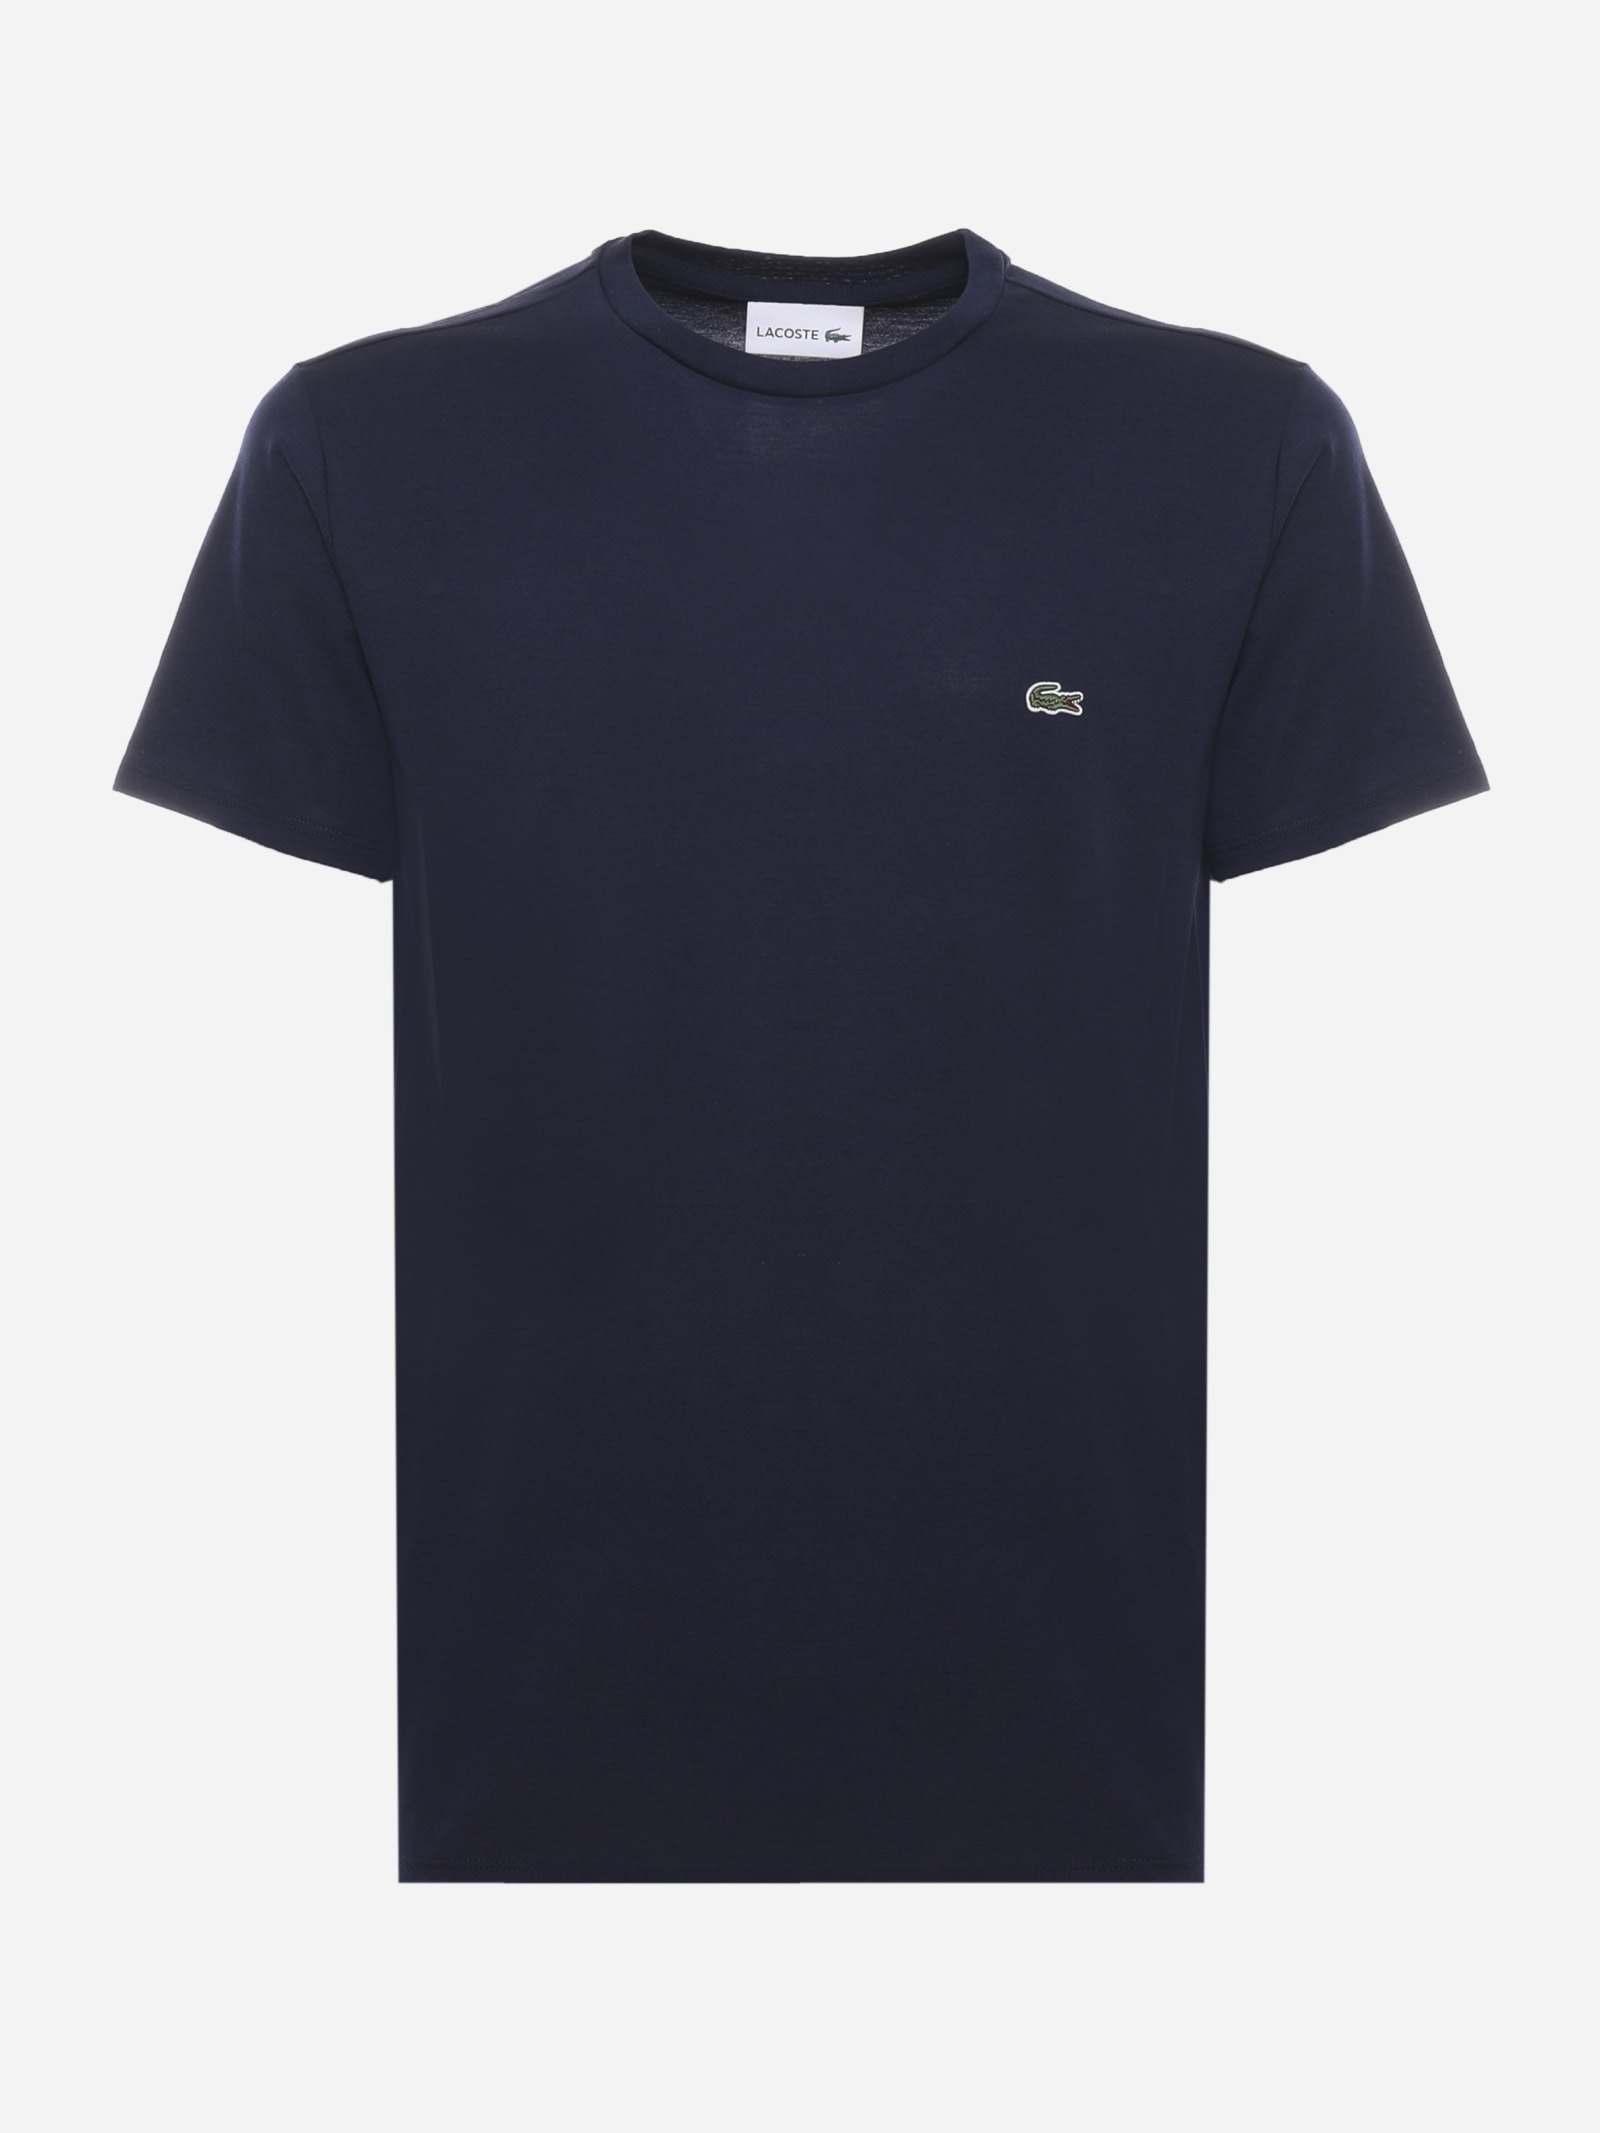 라코스테 남성 Navy Blue T-shirt In Cotton Jersey TH6709 166 MARINE